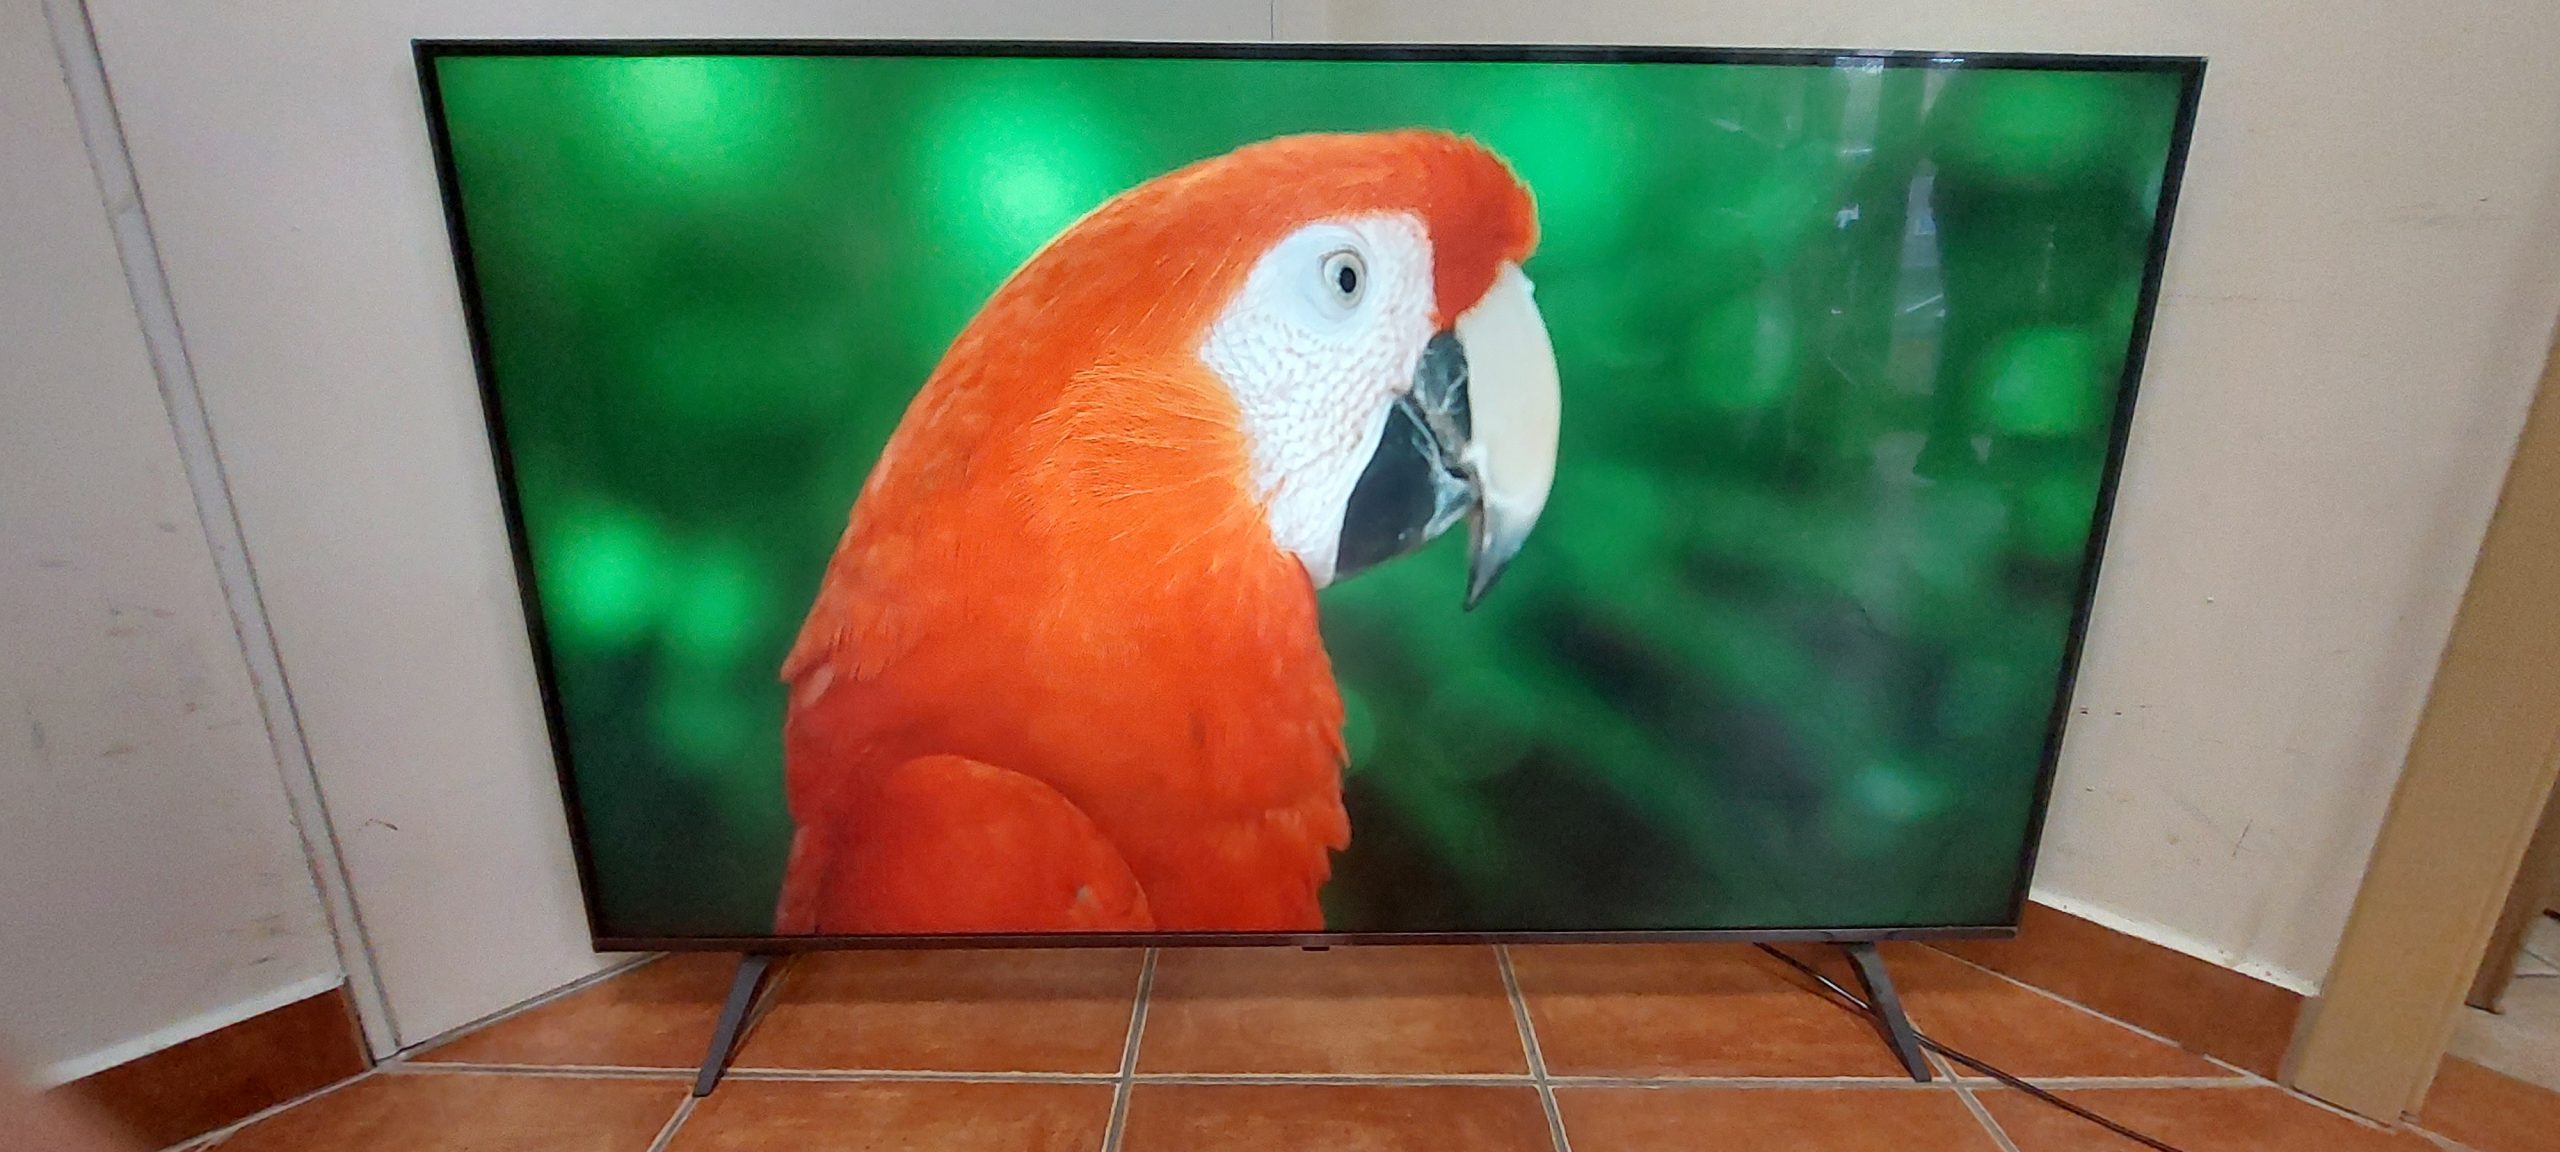 LG 55"Ultra HD 4K Led tv 139Cm, kiemelt kép